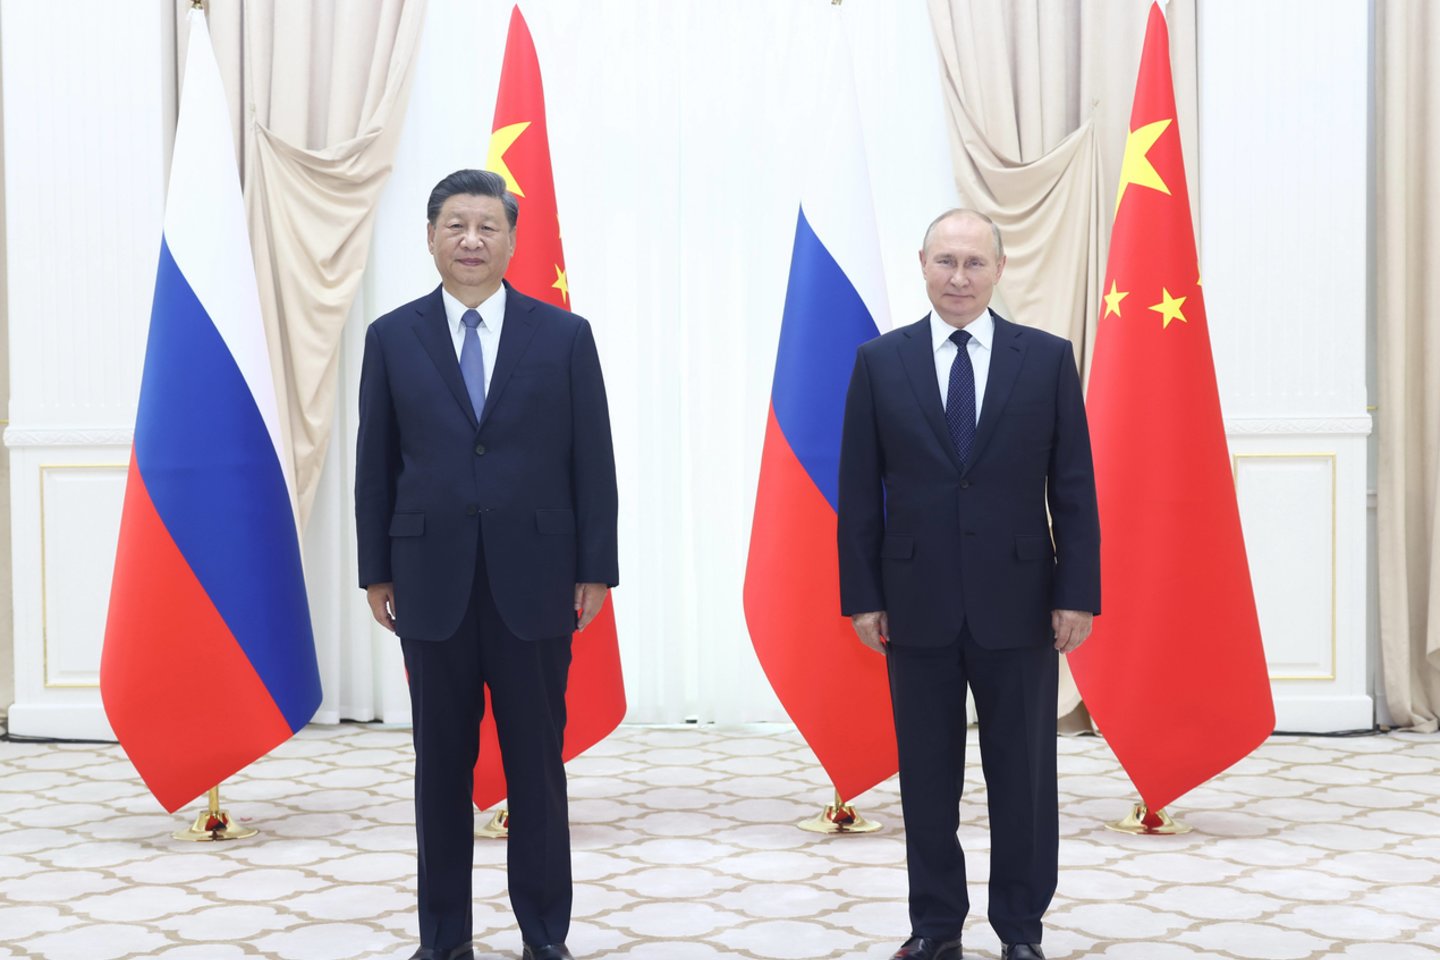 ​Kinijoje pirmadienį apsilankęs aukšto rango Rusijos saugumo pareigūnas pareiškė, kad Kremlius svarbiu savo politikos tikslu laiko ryšių su Pekinu stiprinimą.<br>Sipa Press/Scanpix nuotr.